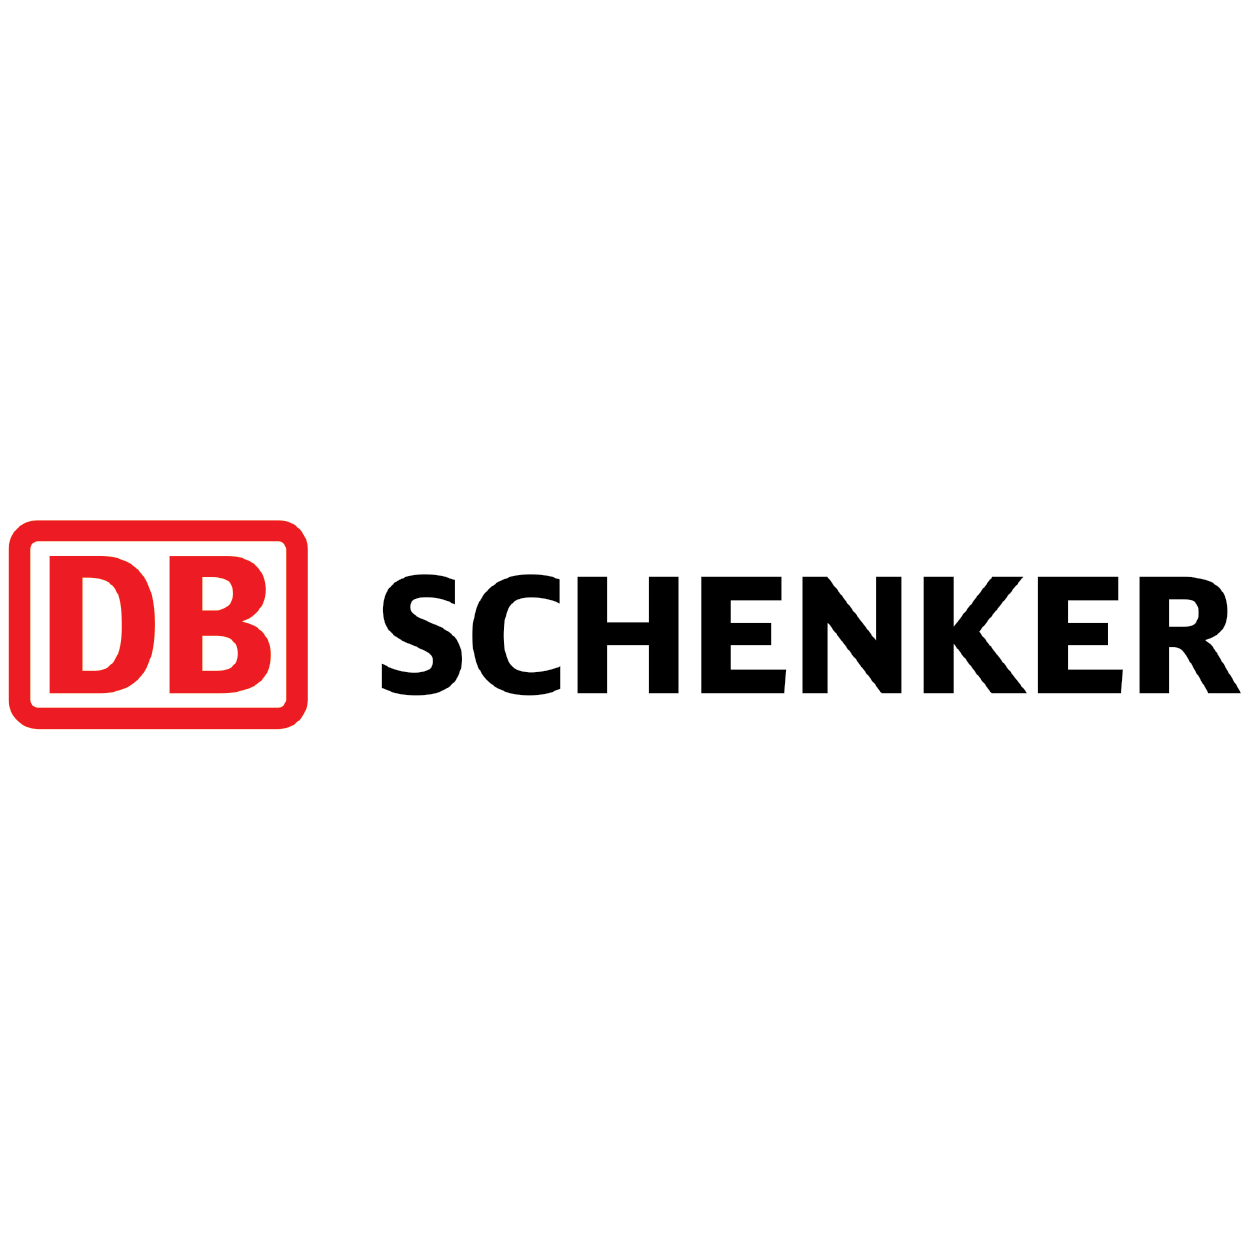 Logos casestudies Logo schenker